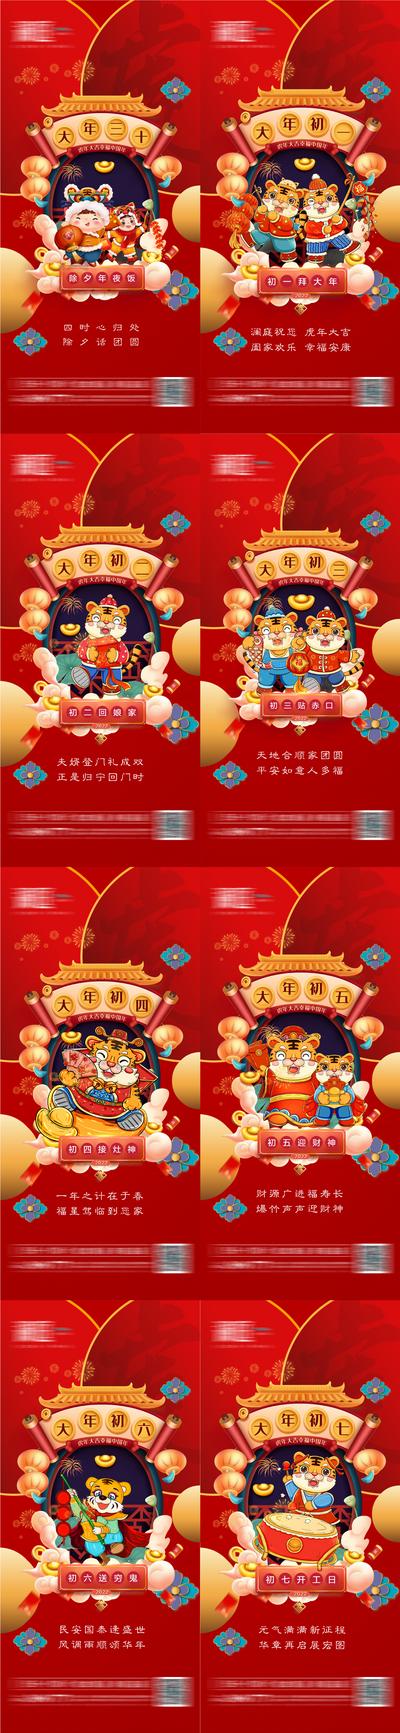 南门网 广告 海报 新年 春节 除夕 初一 初七 团圆 年味 年俗 新年 新春 拜年 大年初一 系列 插画 手绘